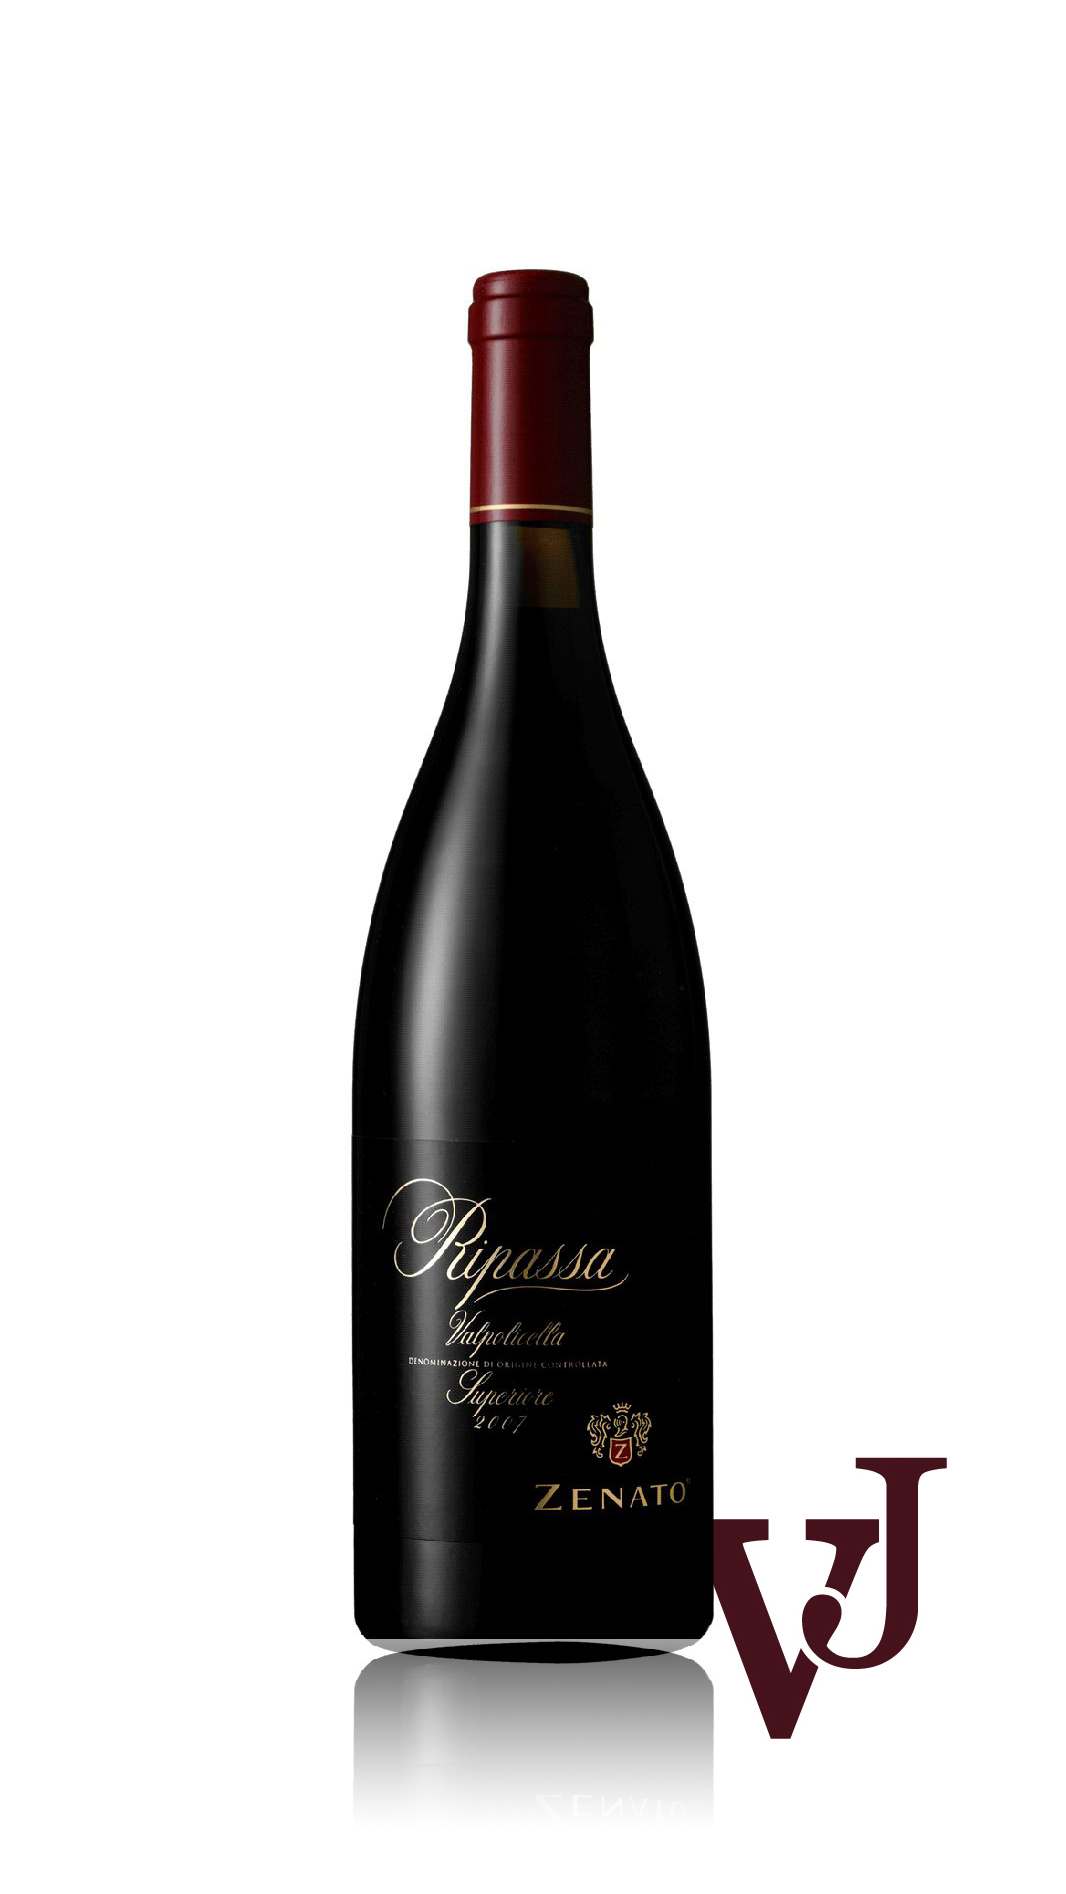 Rött Vin - Zenato Ripassa Superiore artikel nummer 1232401 från producenten Zenato från området Italien